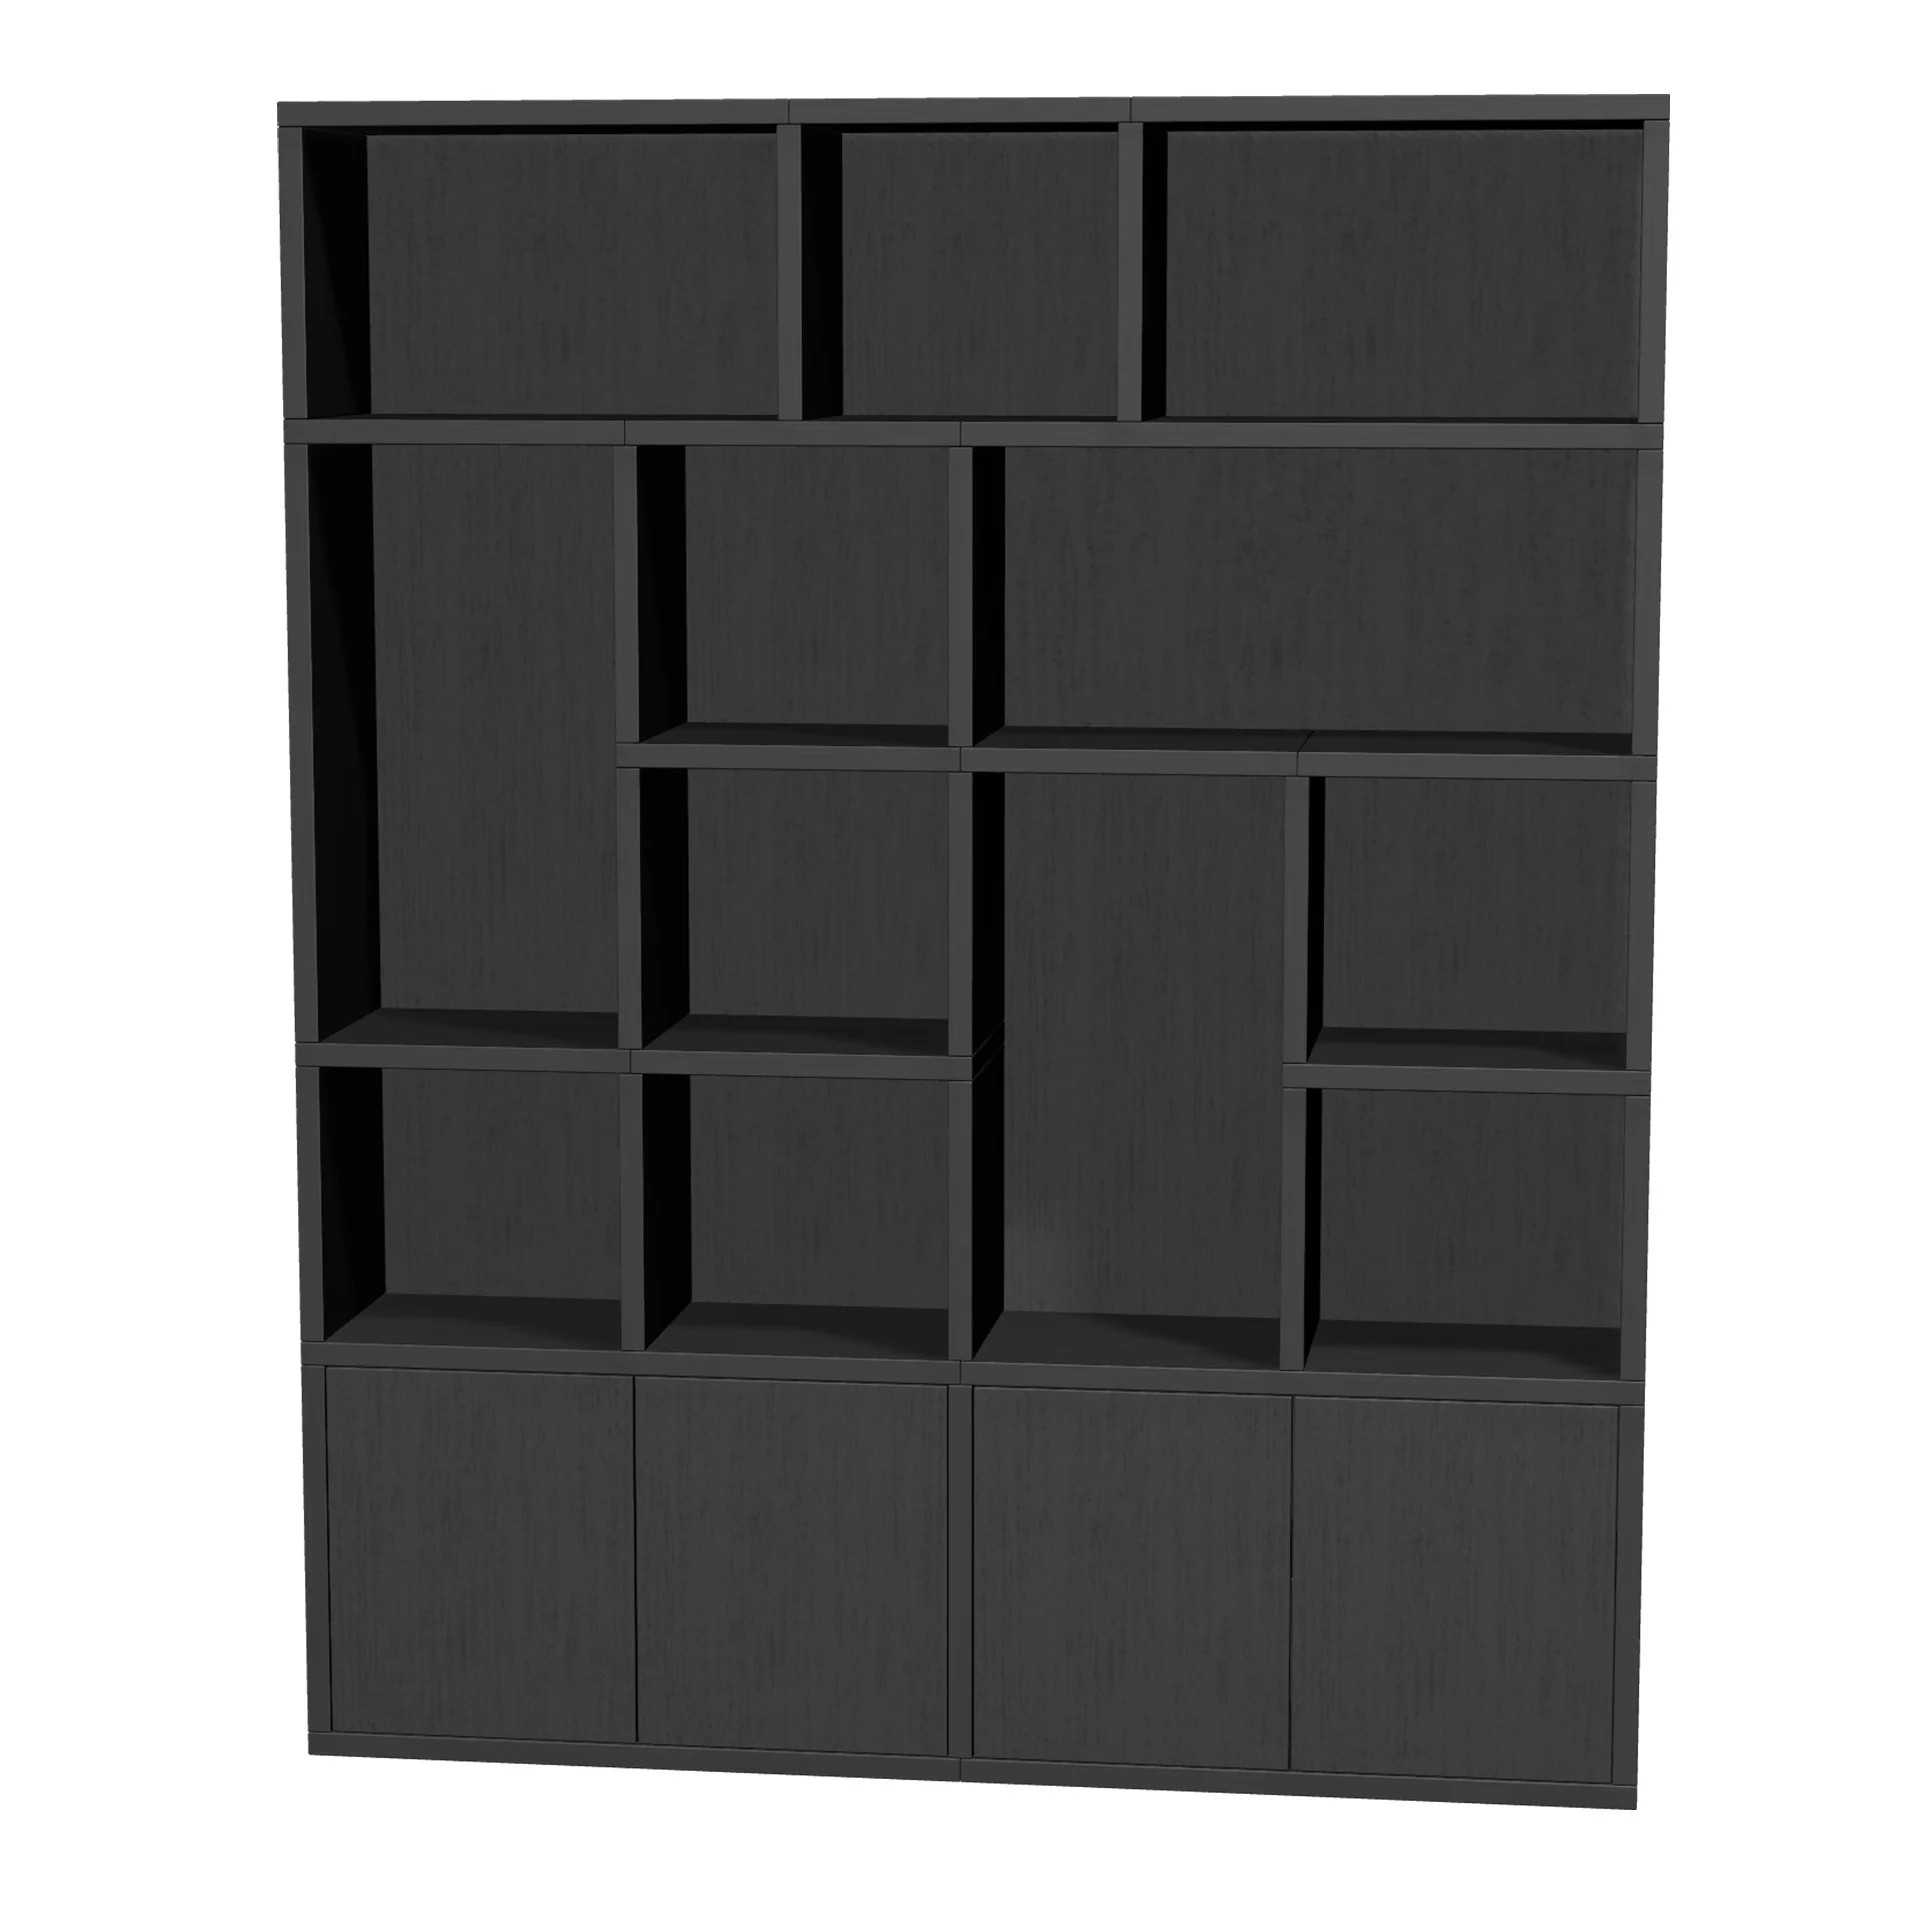 TSFC011 in black oak furniture board